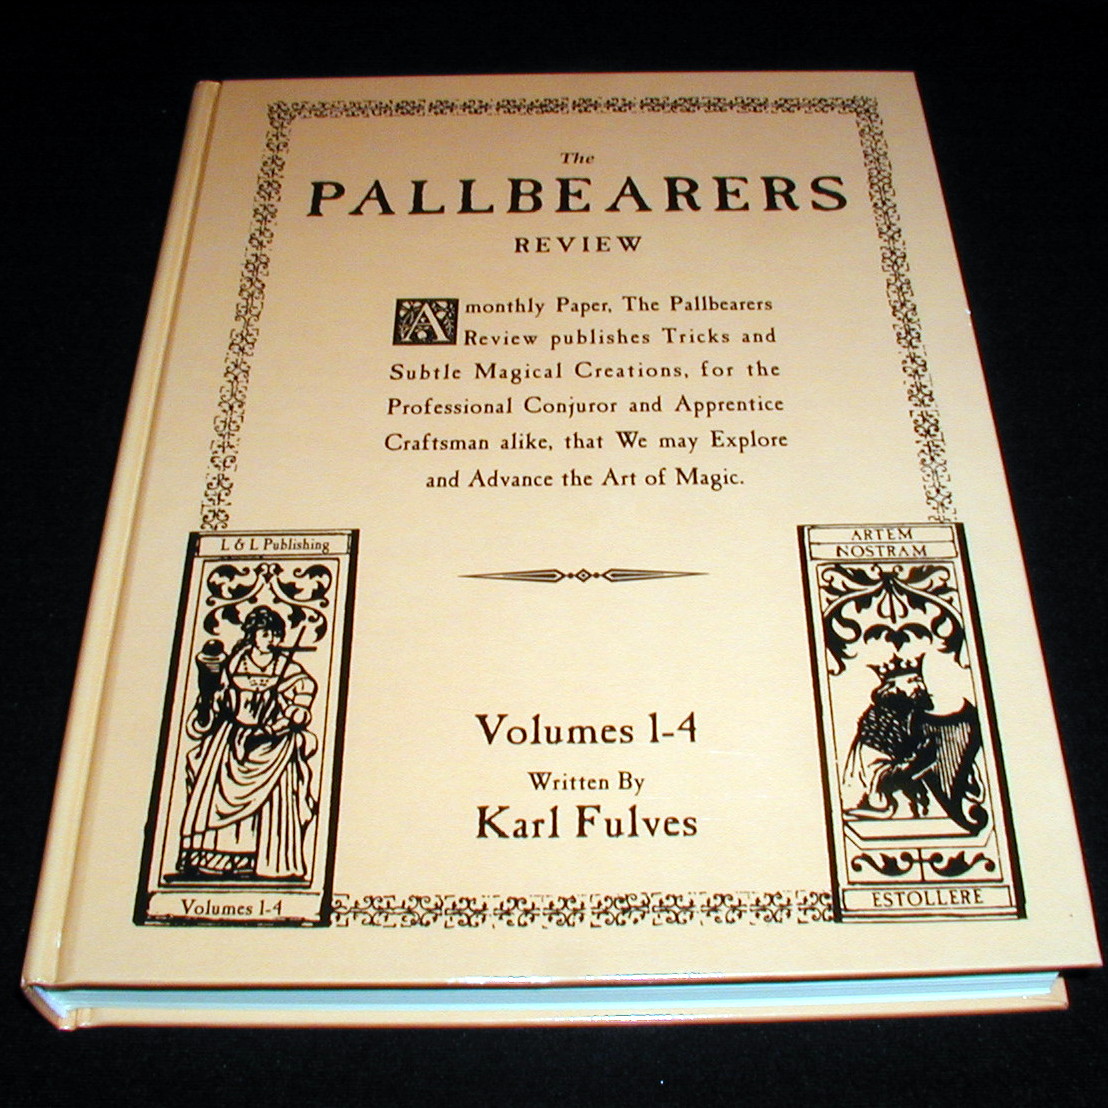 Karl Fulves - Pallbearers Review vols 1-4